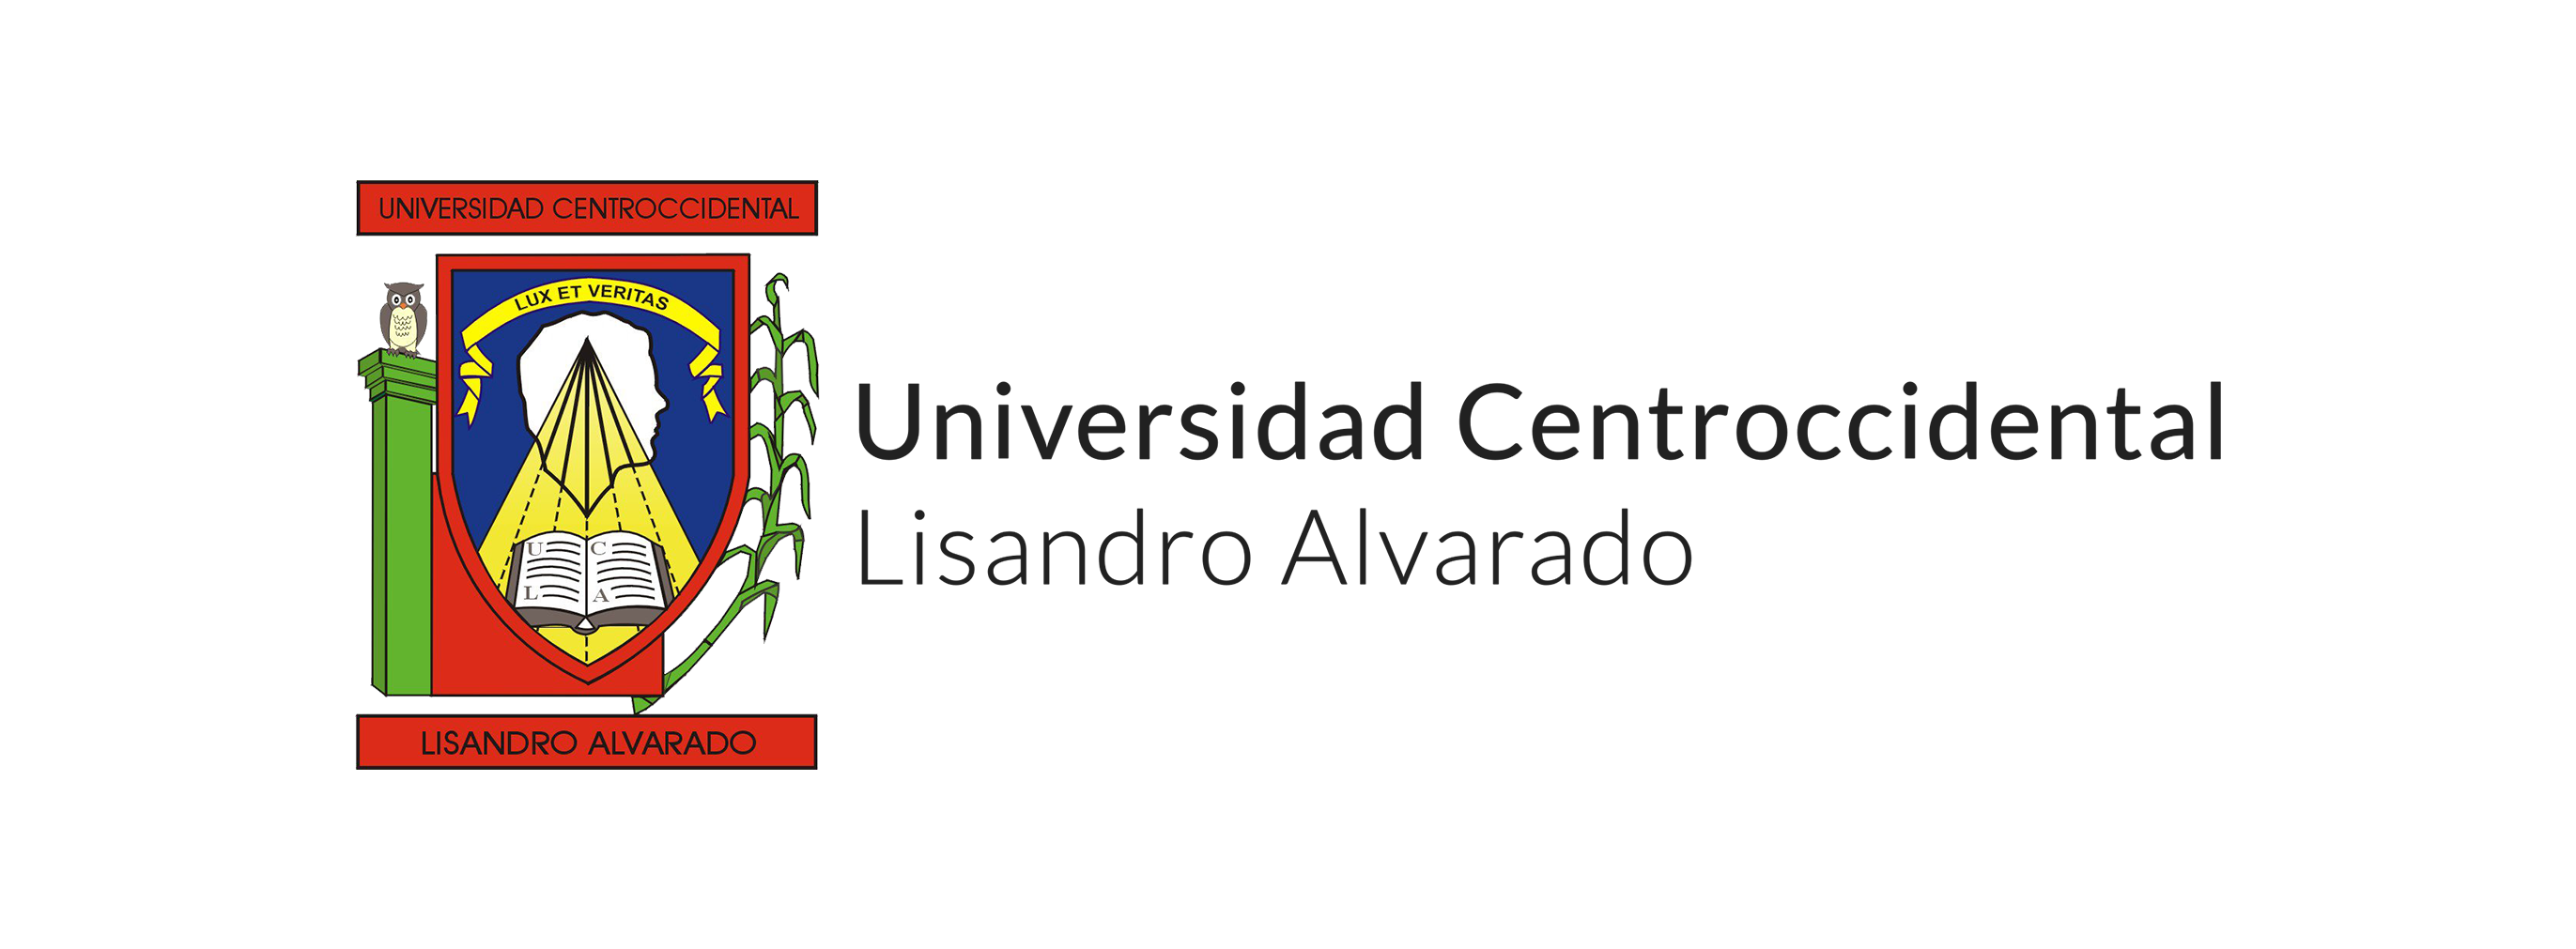 Universidad Lisandro Alvarado2